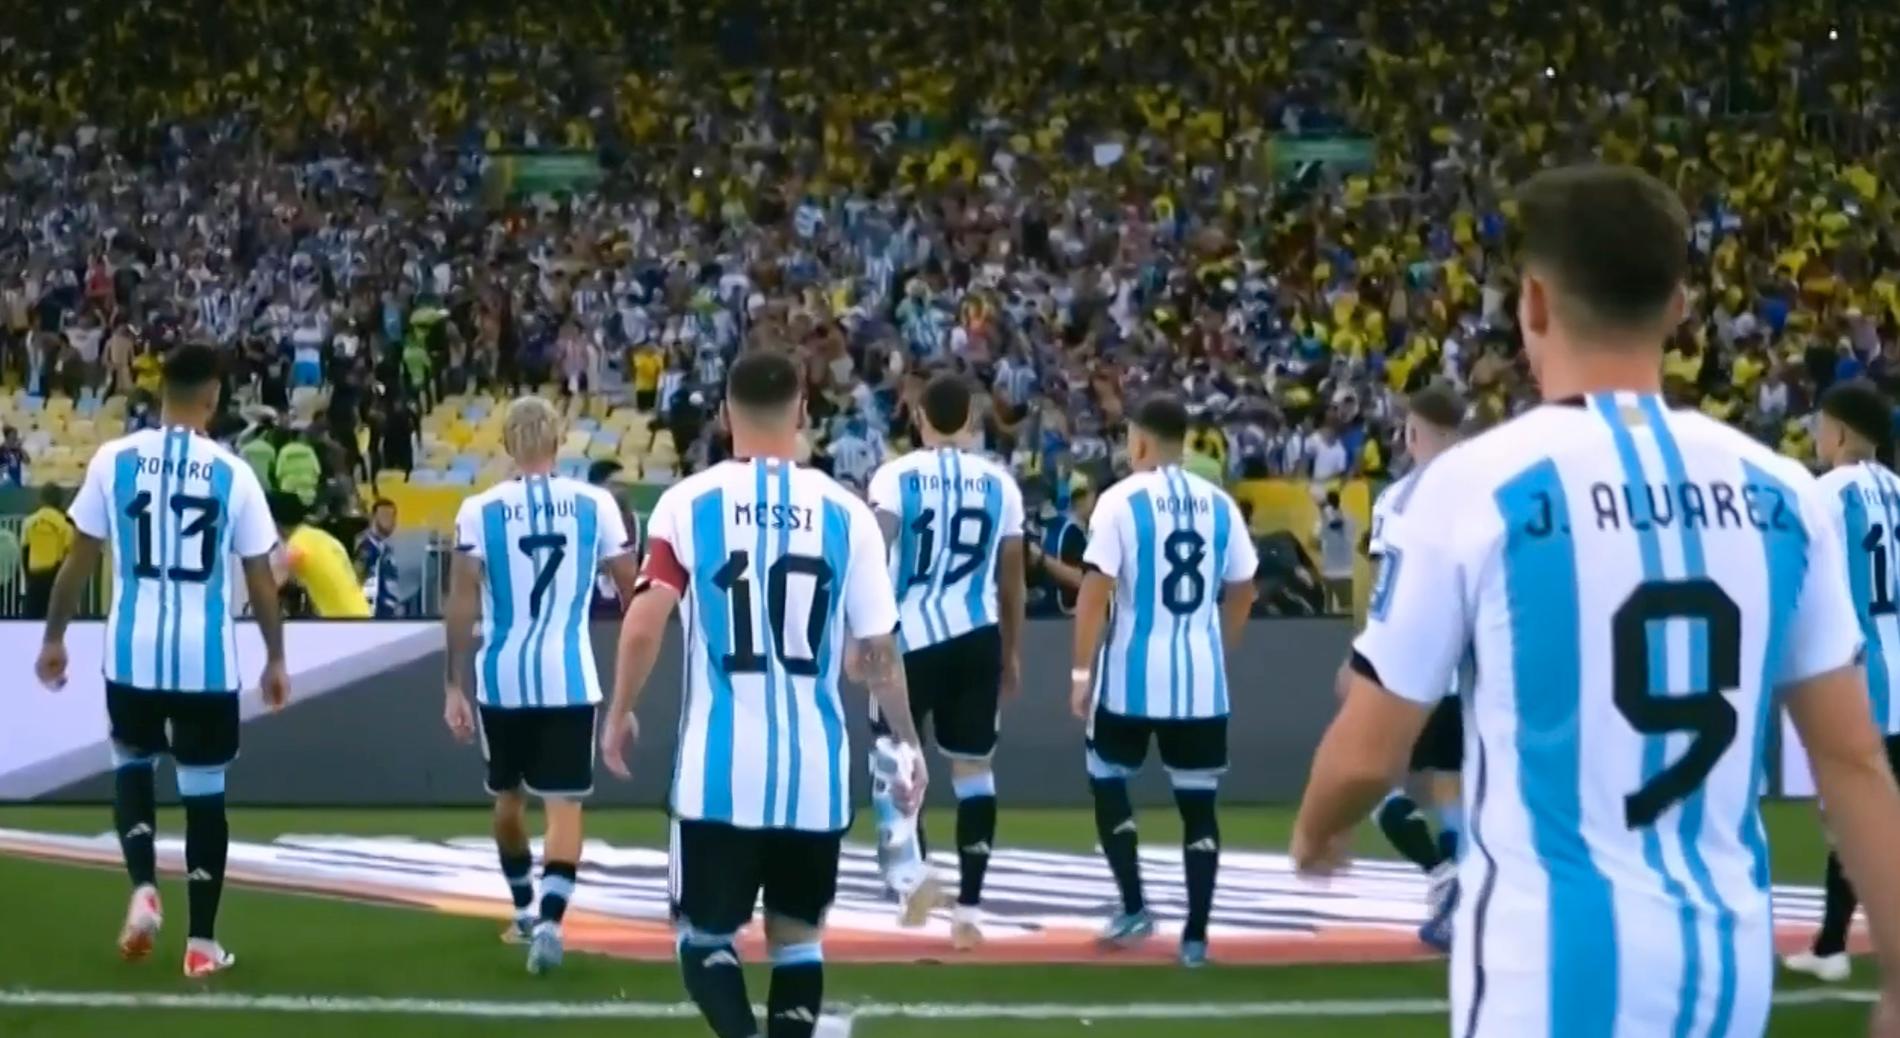 Argentinska spelarna går mot läktarkaoset för att försöka lugna situationen.